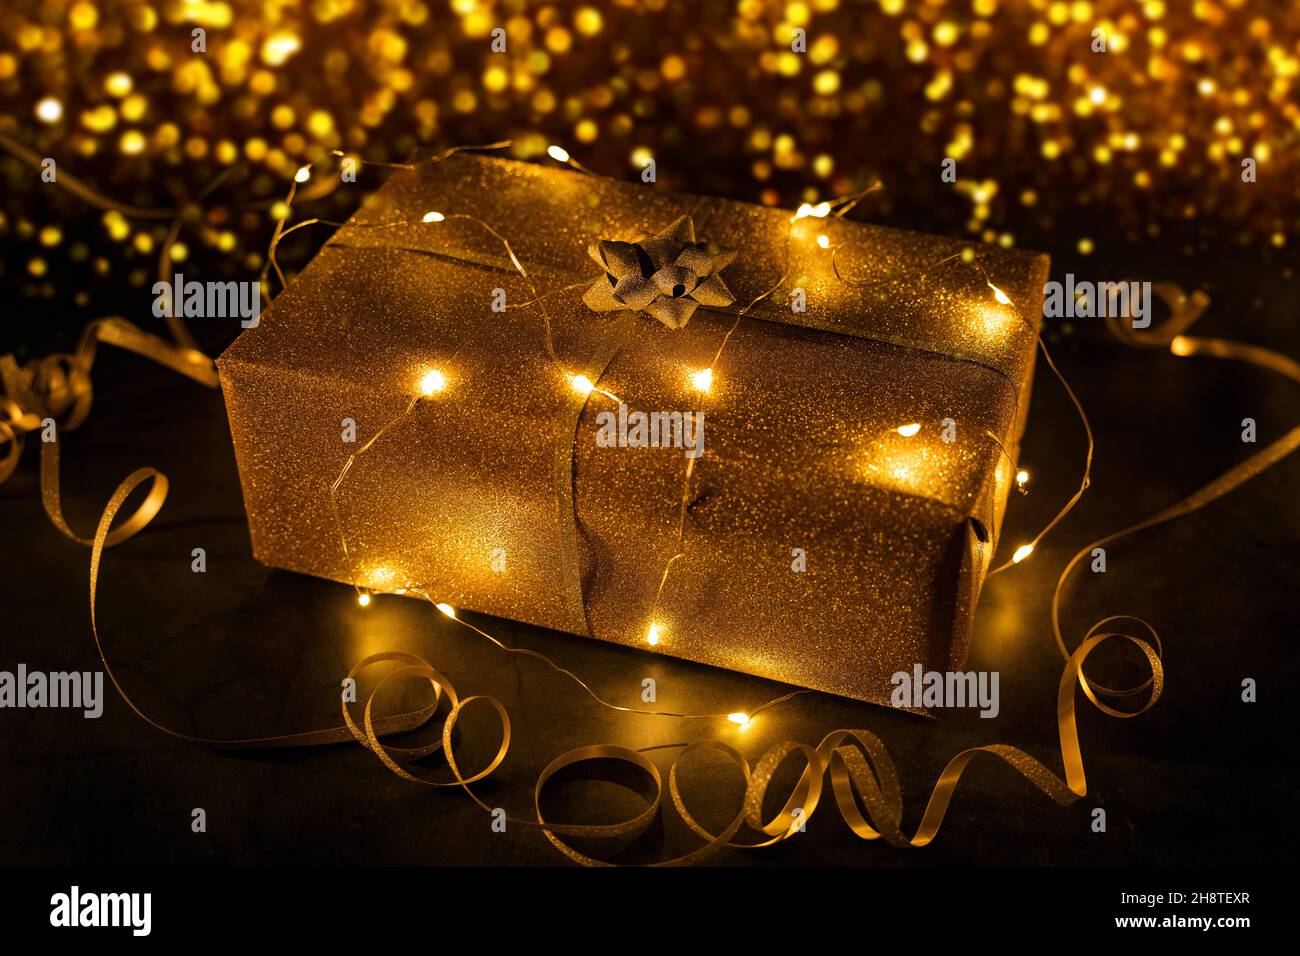 cadeau doré enveloppé de guirlandes de lumières sur fond de bokeh doré Banque D'Images